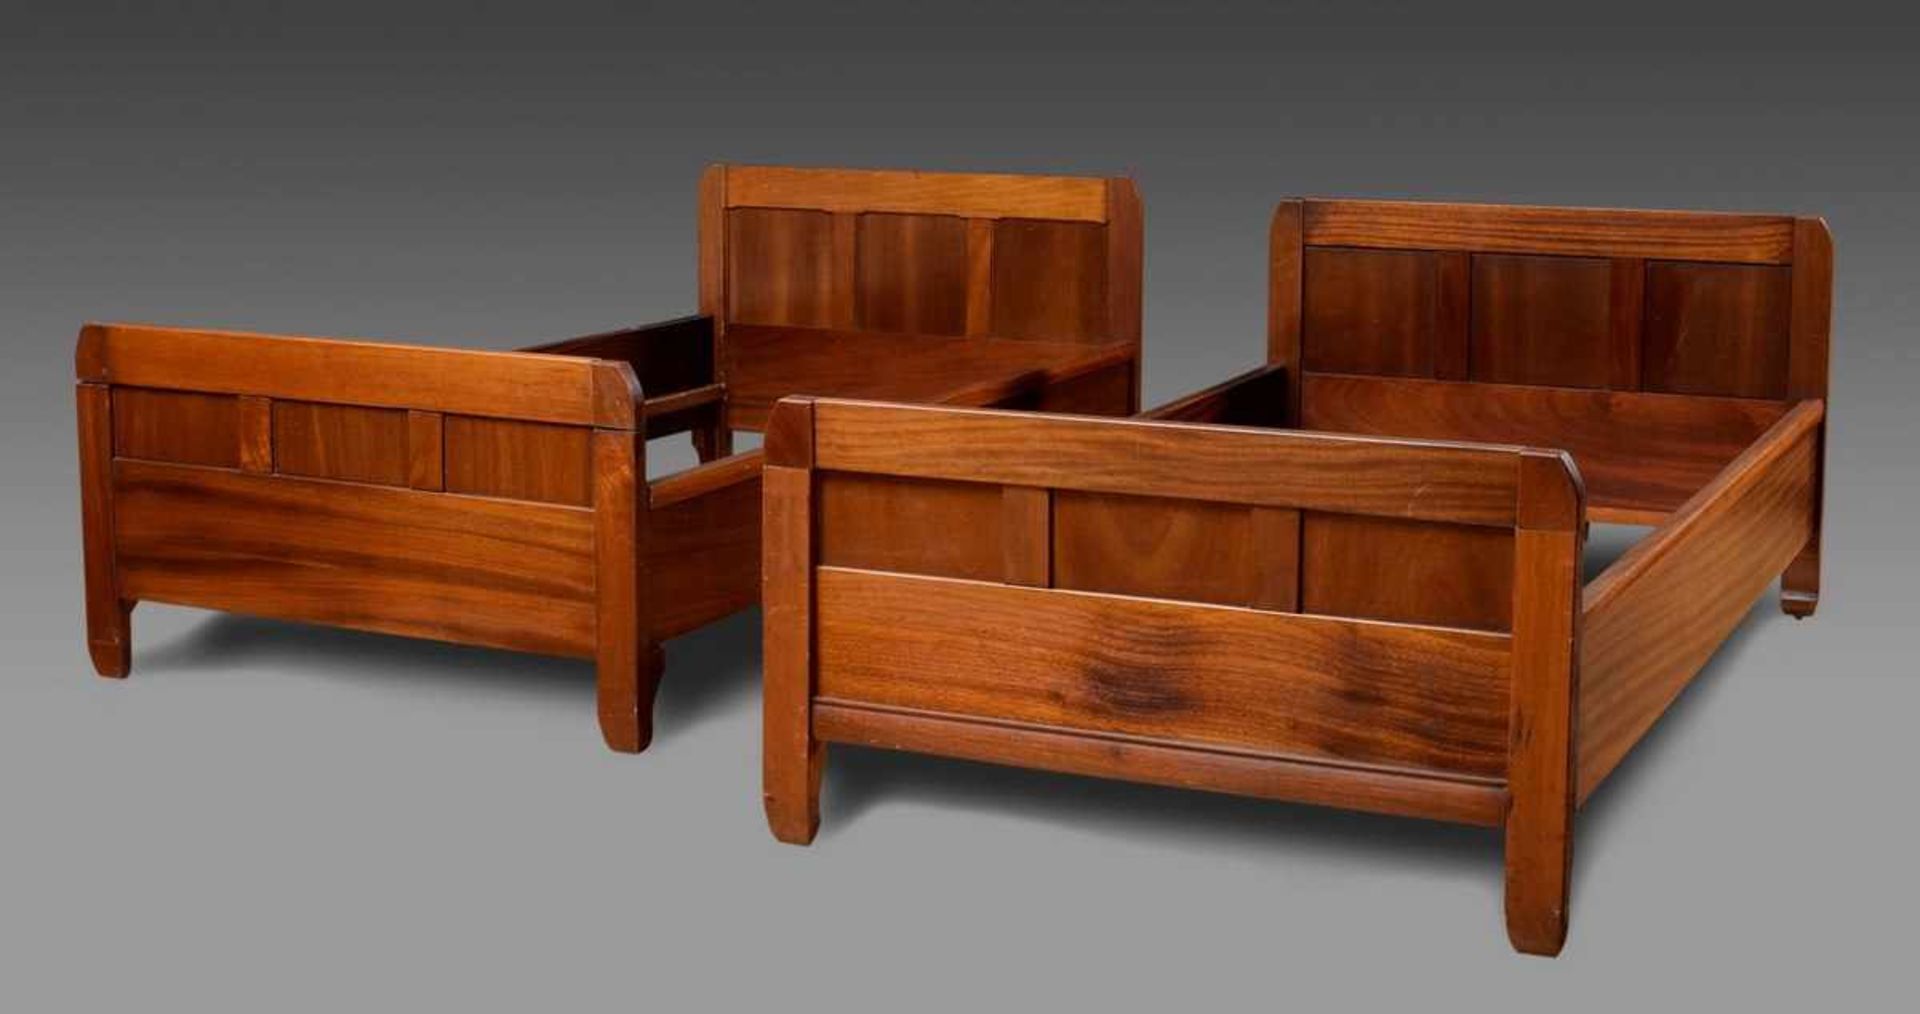 3 Teile Riemerschmidt, Richard (1868-1957): Paar Betten und Nachttischchen aus Einrichtung III für - Bild 2 aus 7